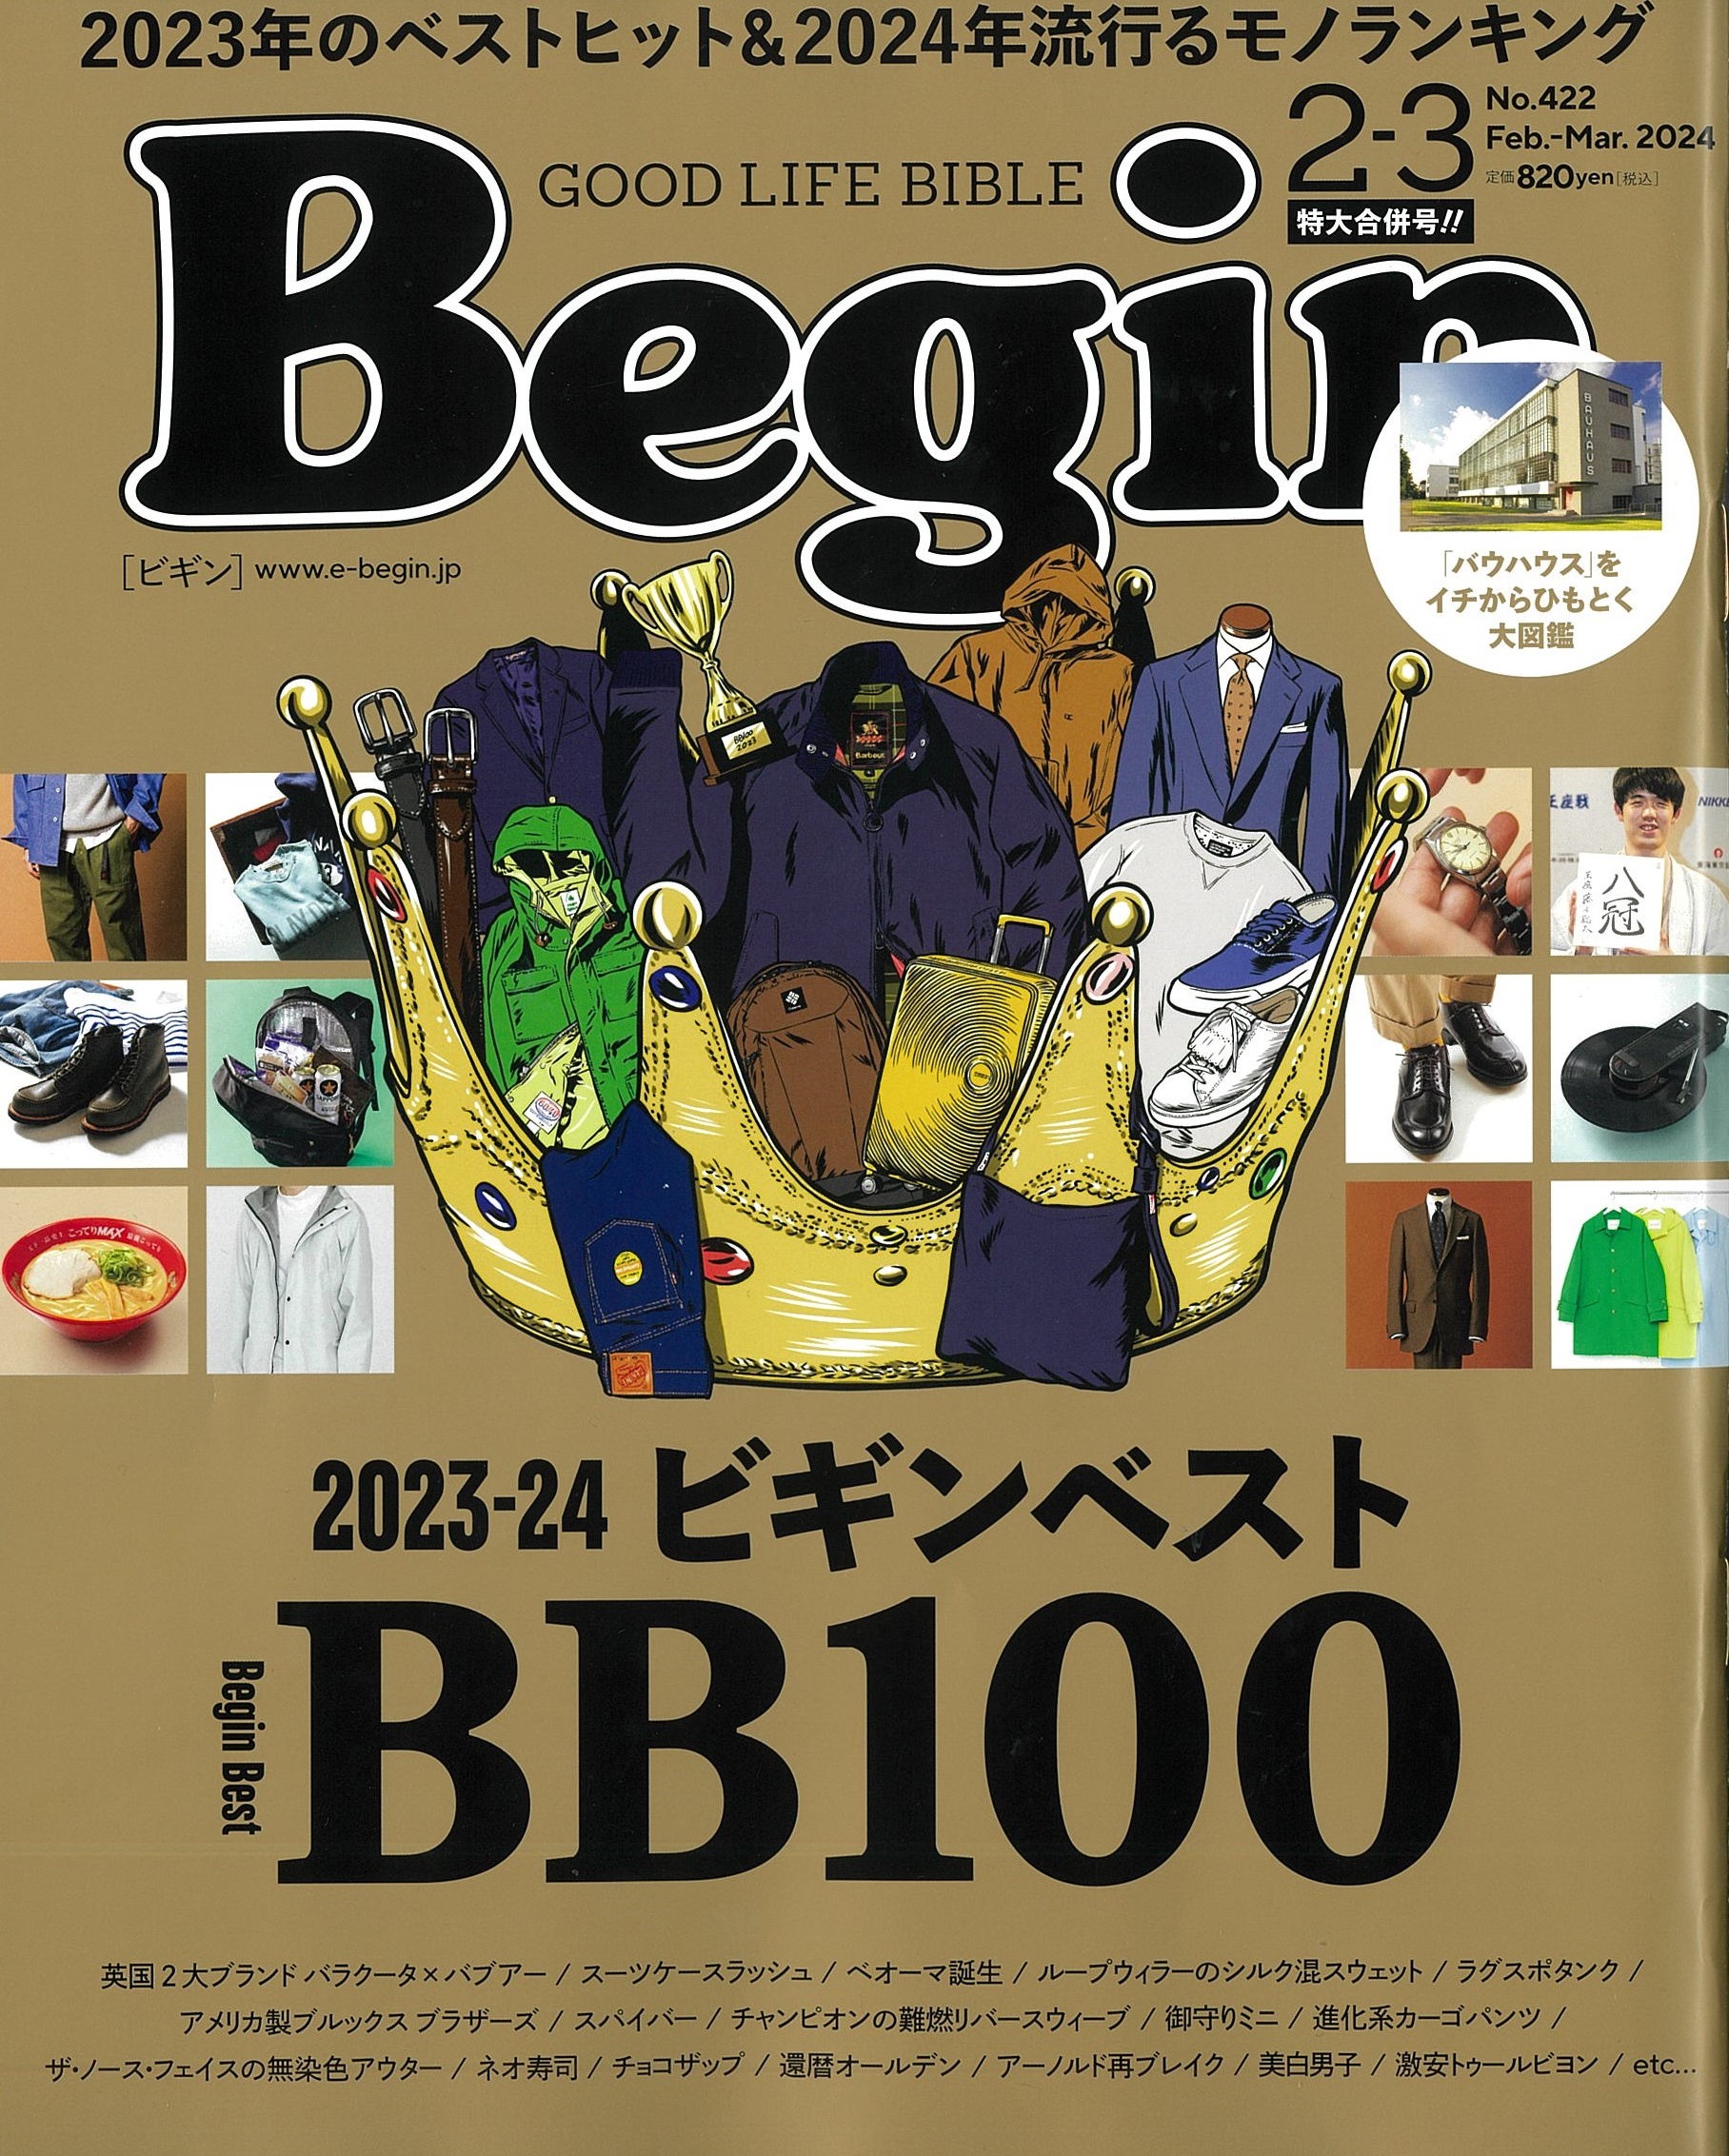 『ビギン』2-3月号「2023-2024 Begin Best 100」に選ばれました!